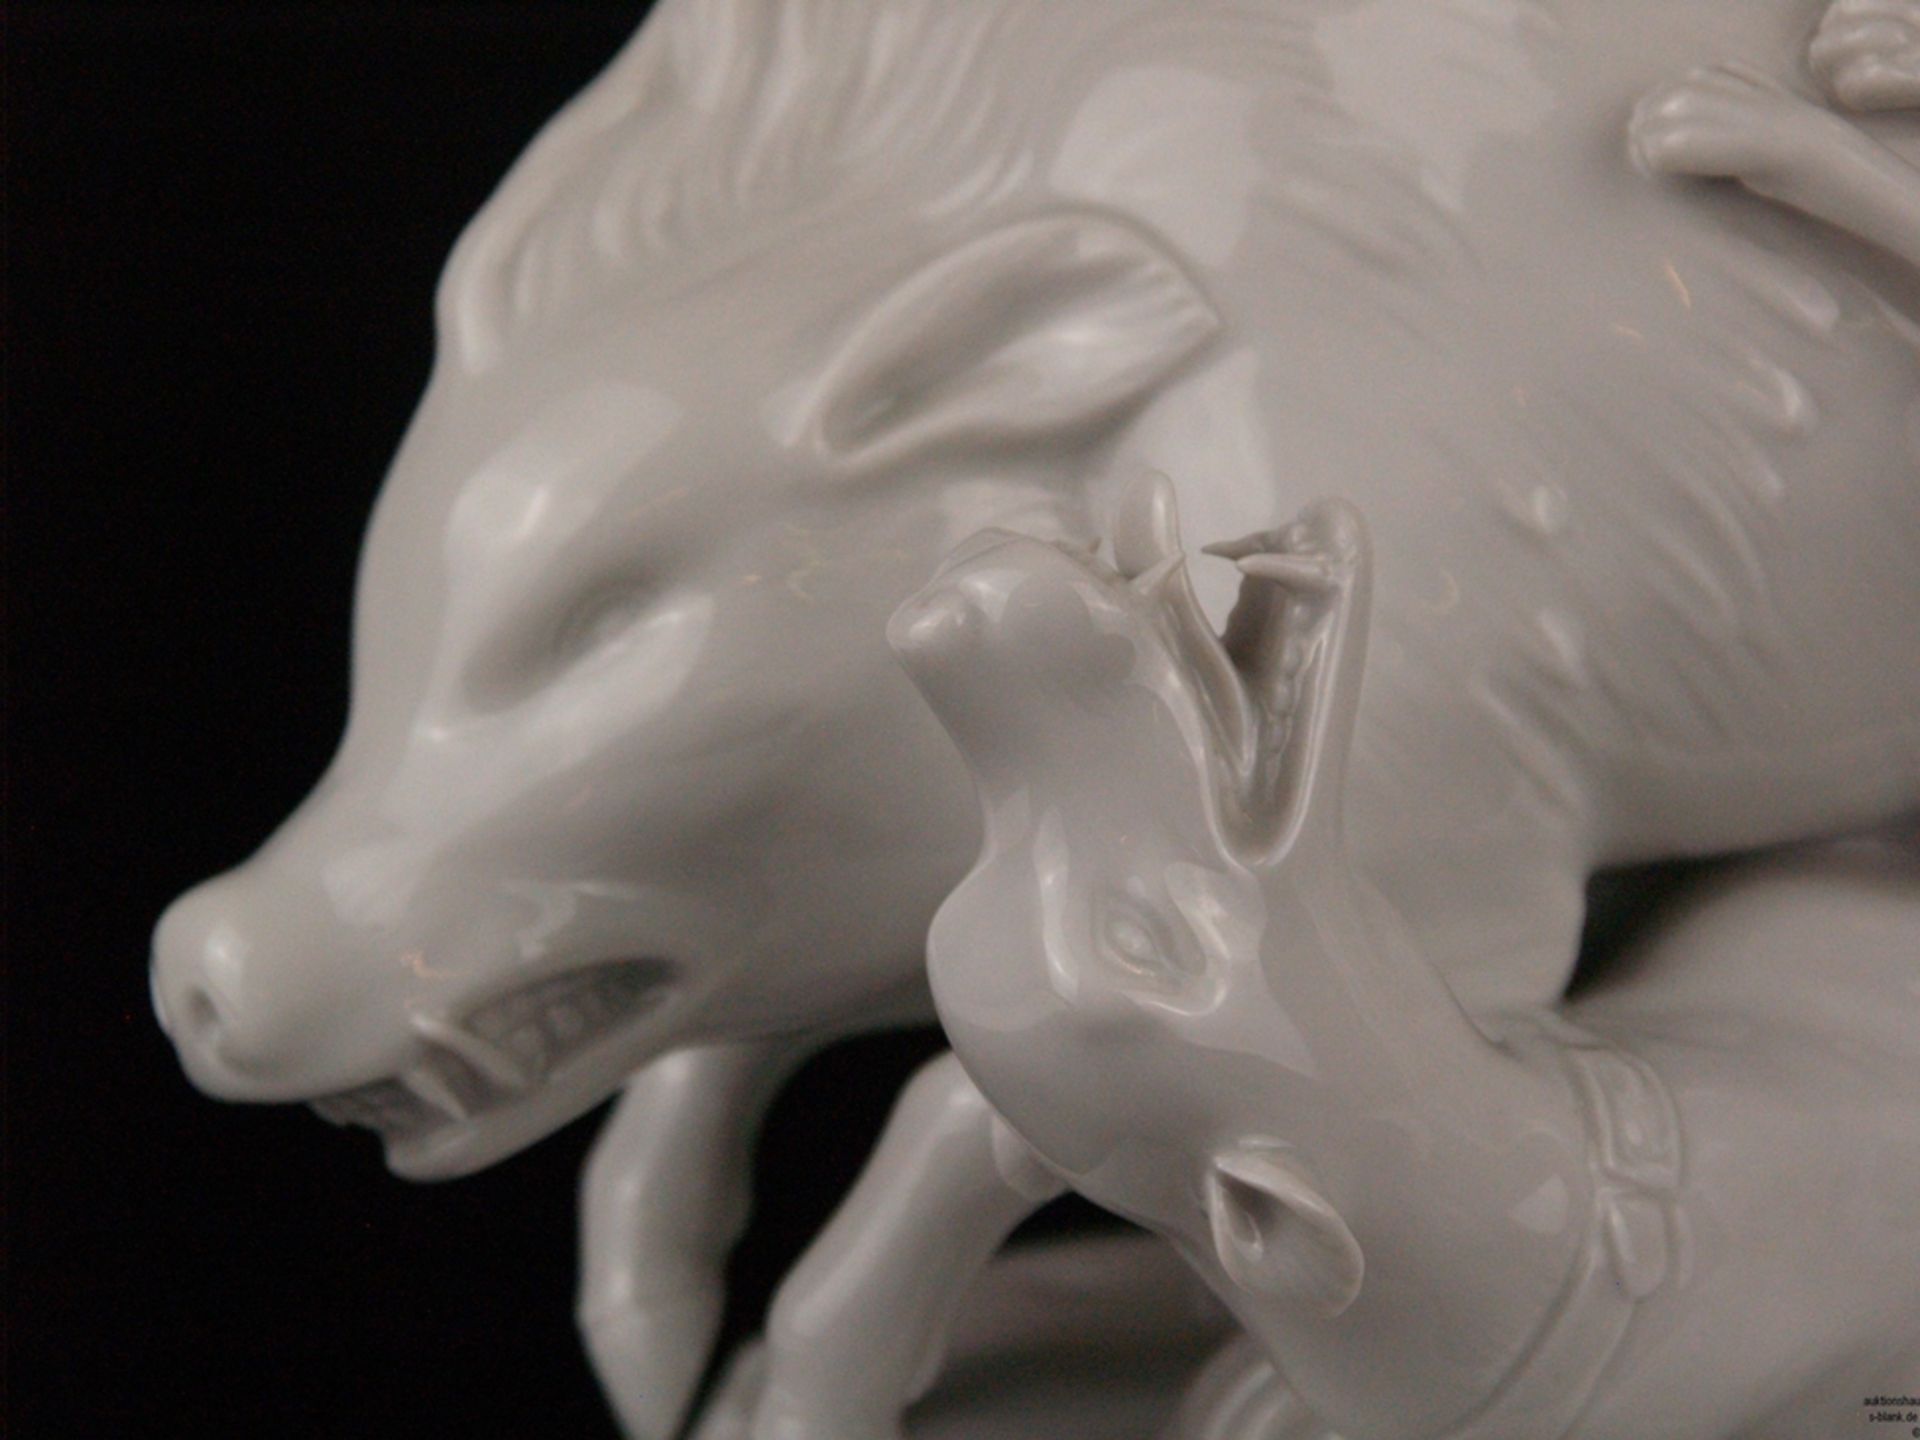 Porzellanfigur "Wildschweinjagd mit zwei Hunden" - blaue Radmarke Höchst, weißes Porzellan, glasier - Bild 3 aus 10